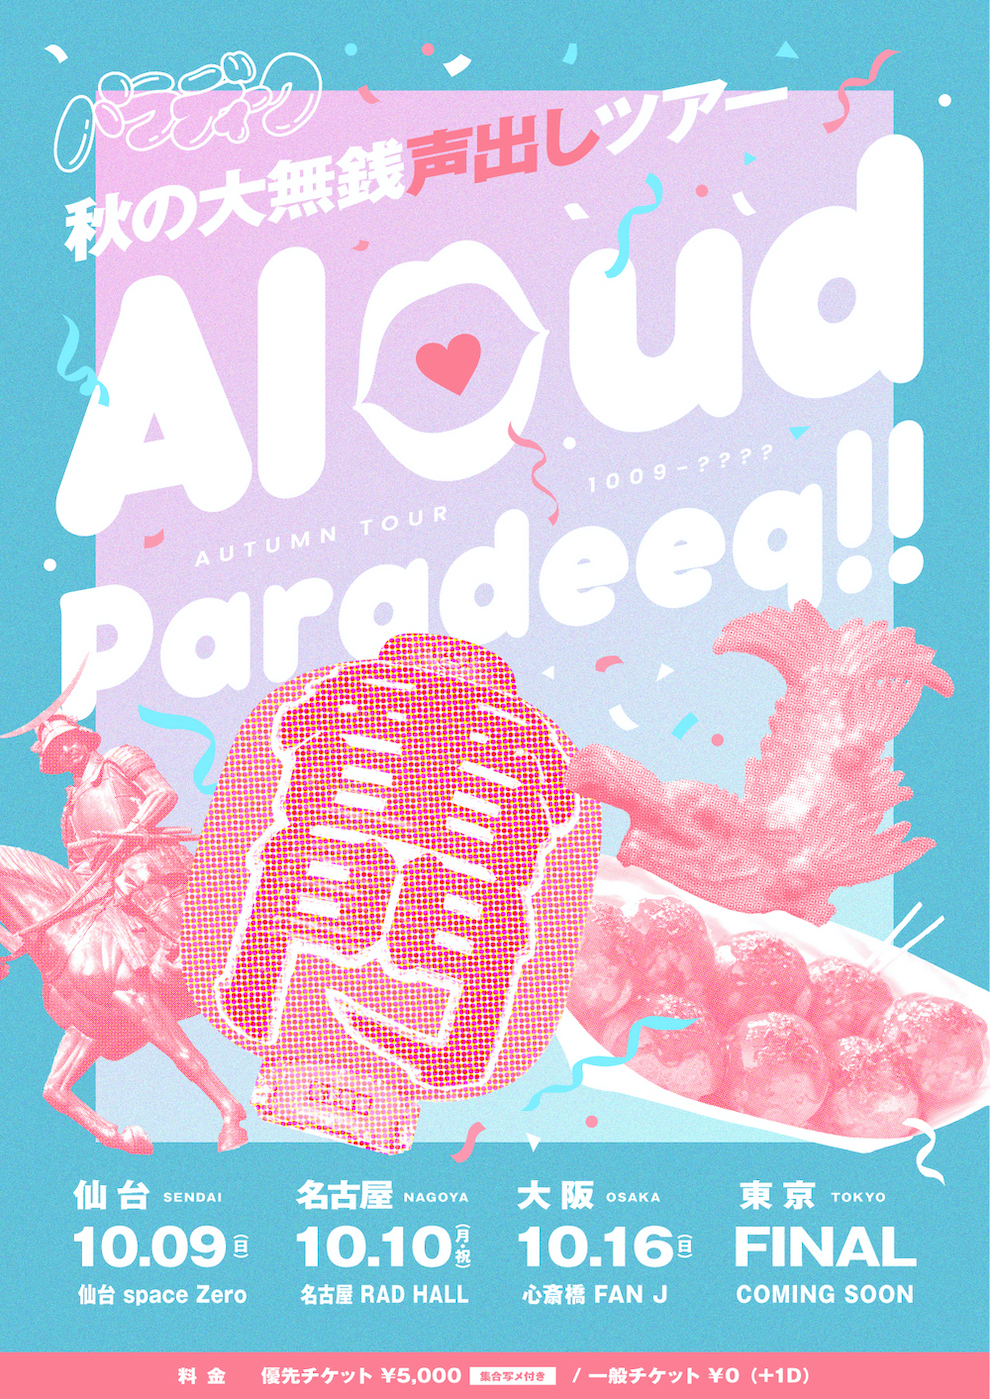 秋の大無銭声出しツアー ~Aloud Paradeeq !!~ -名古屋-